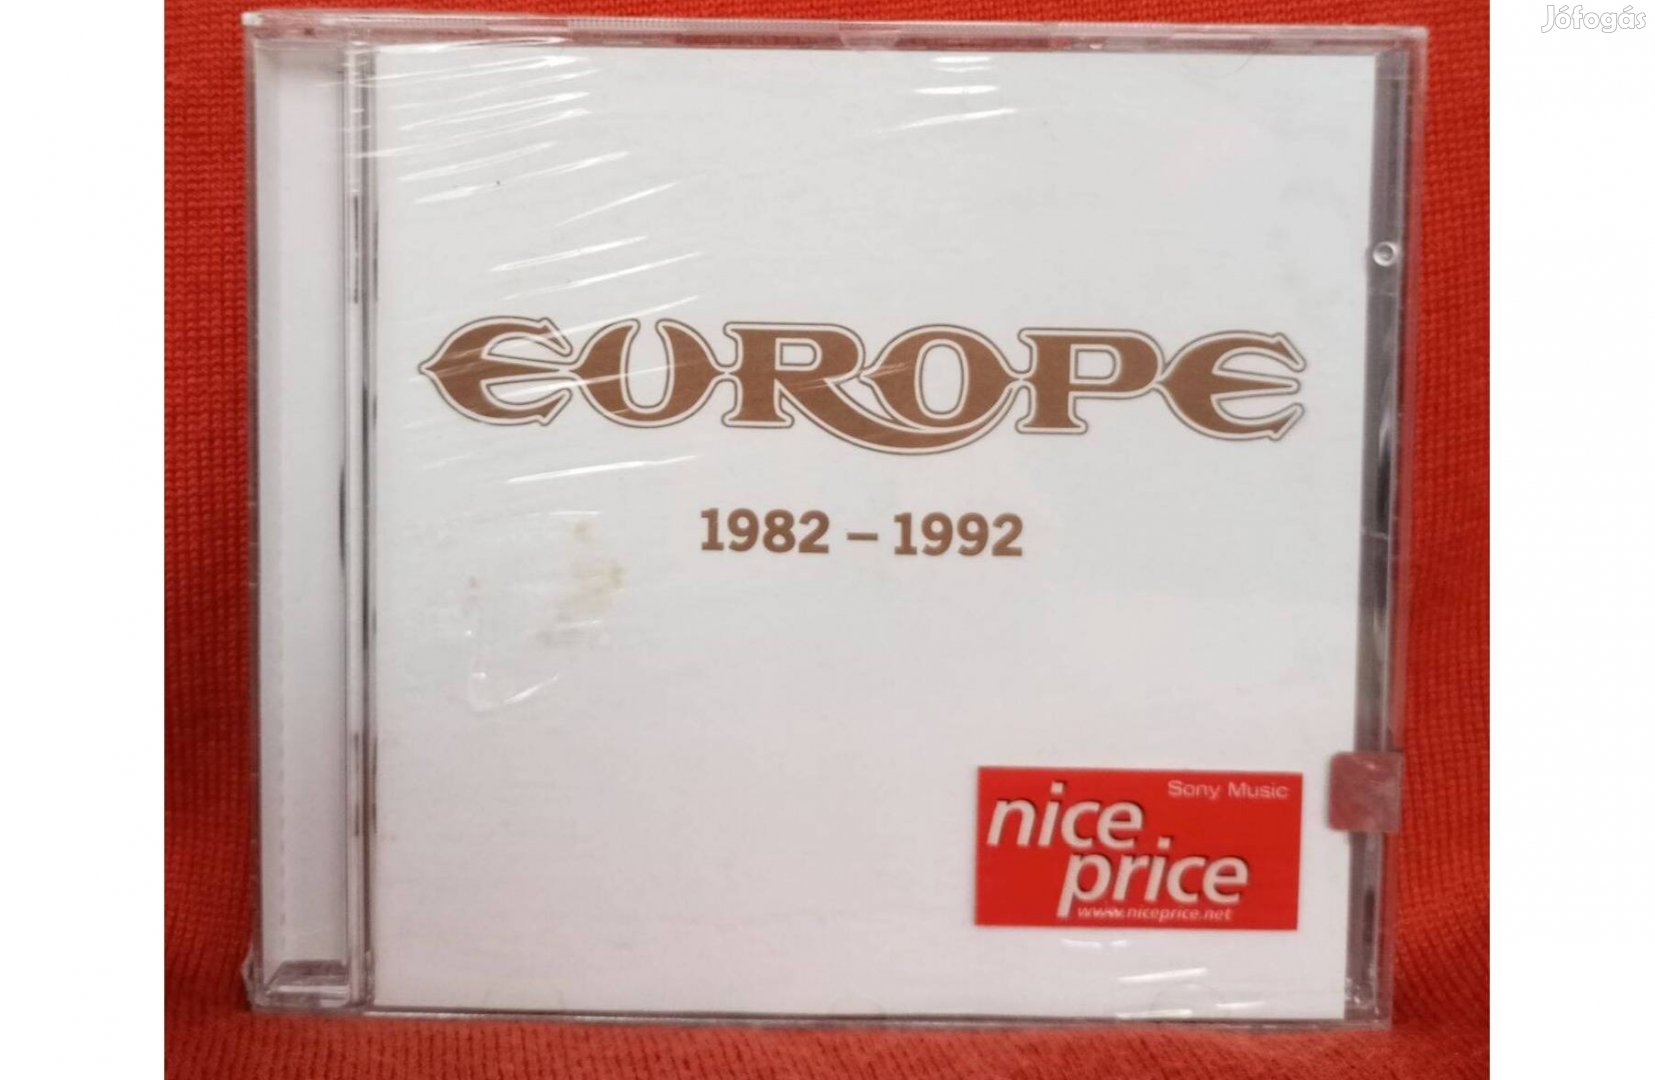 Europe - 1982-1992 CD. /új,fóliás/